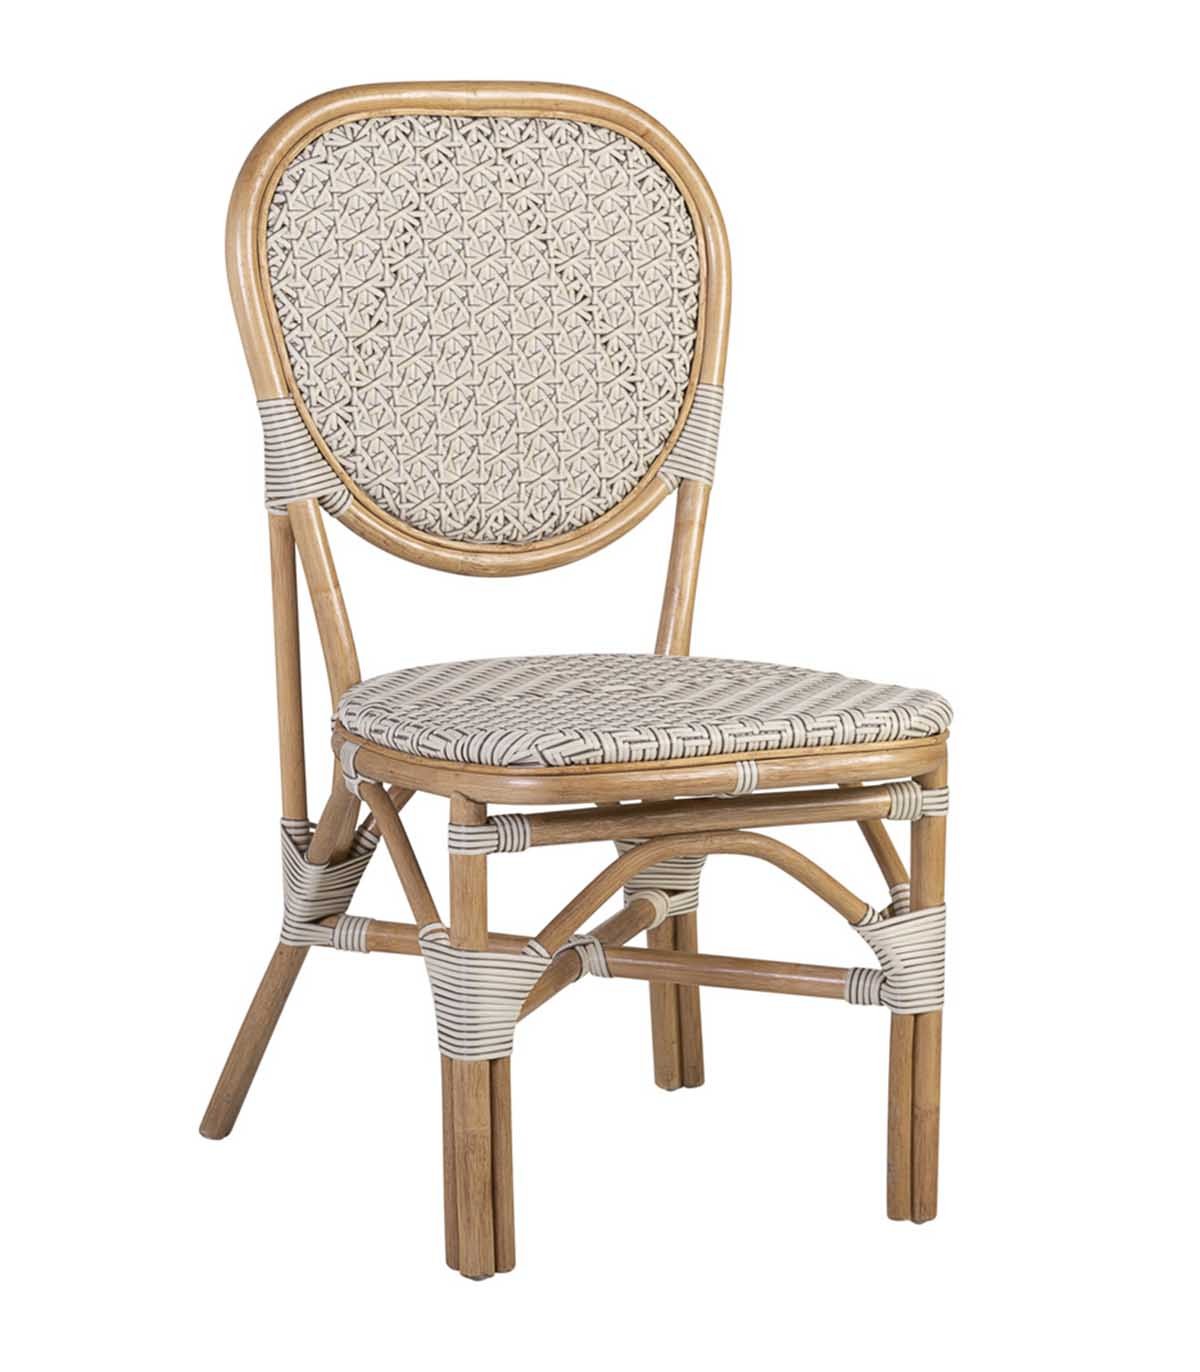 Comprar sillas romanas al mejor precio online